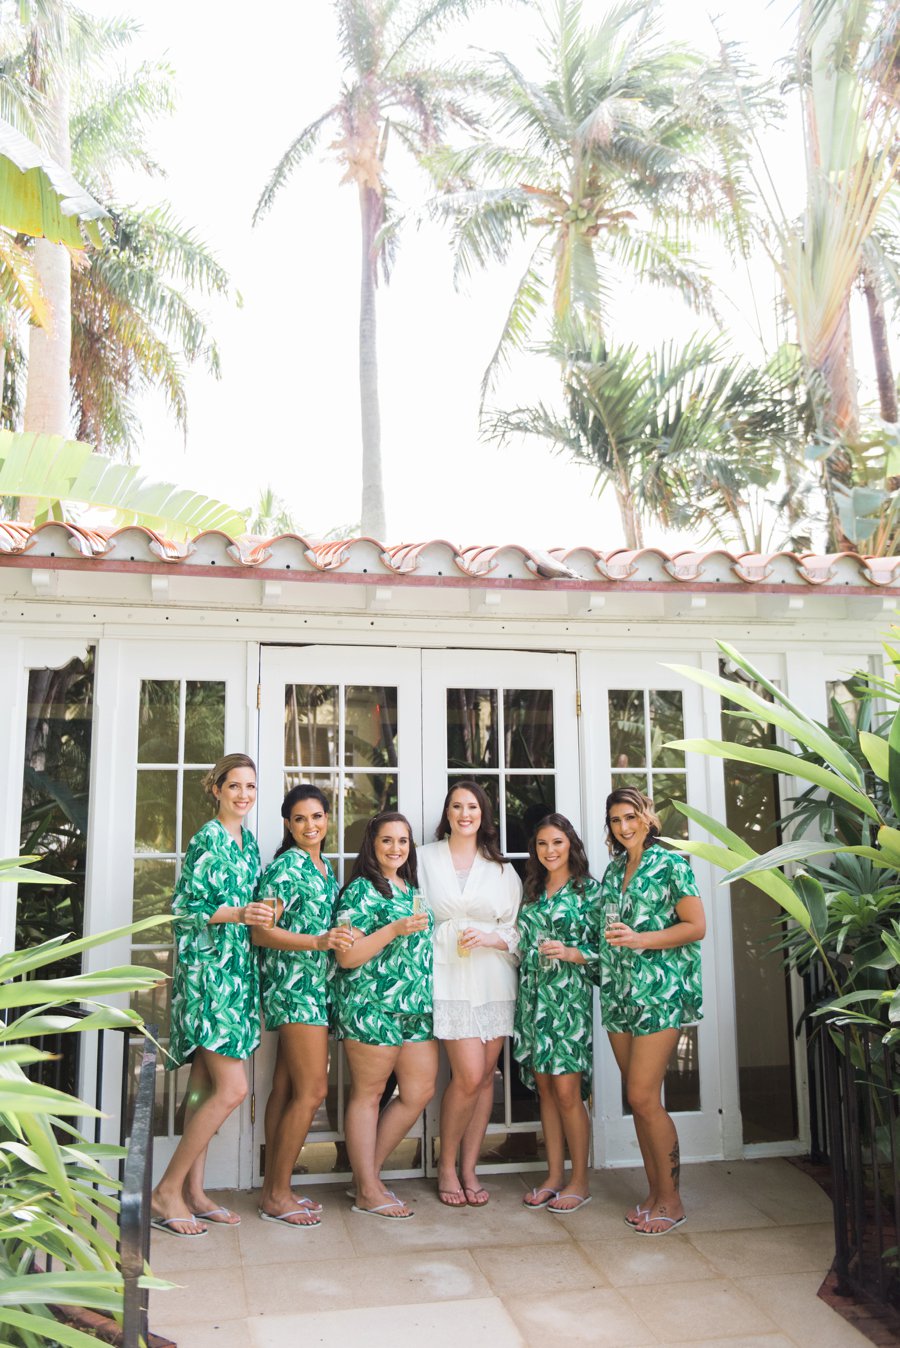 A Tropical & Elegant South Florida Wedding Day via TheELD.com